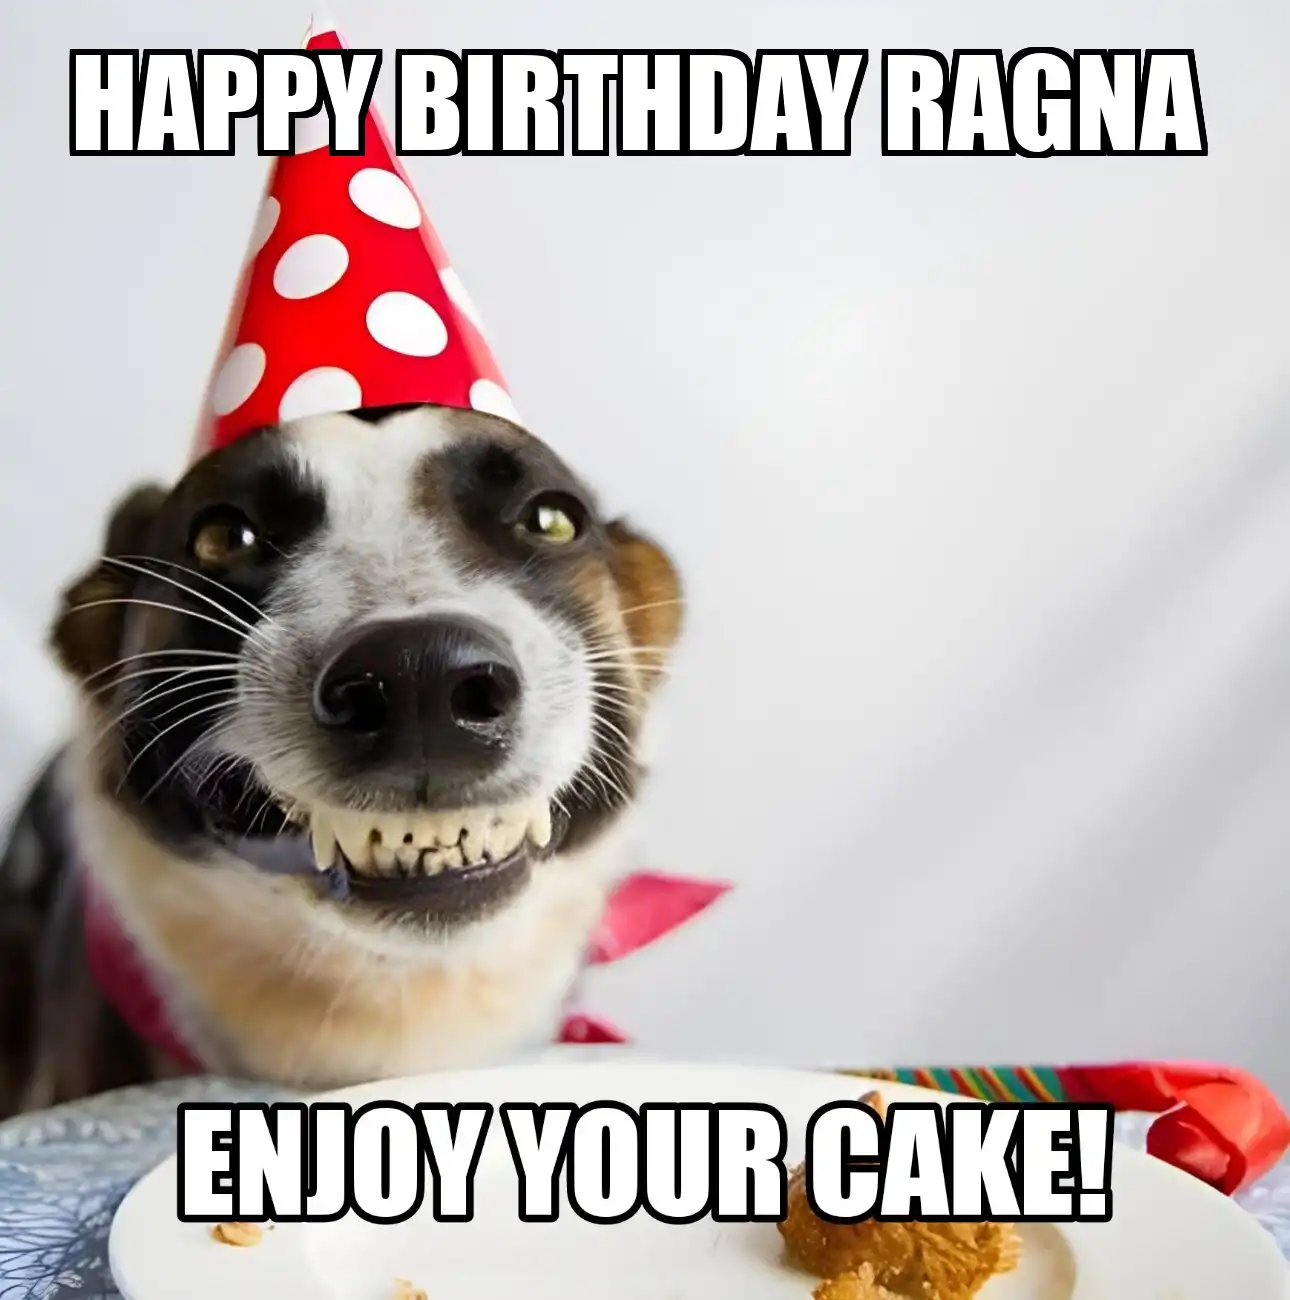 Happy Birthday Ragna Enjoy Your Cake Dog Meme